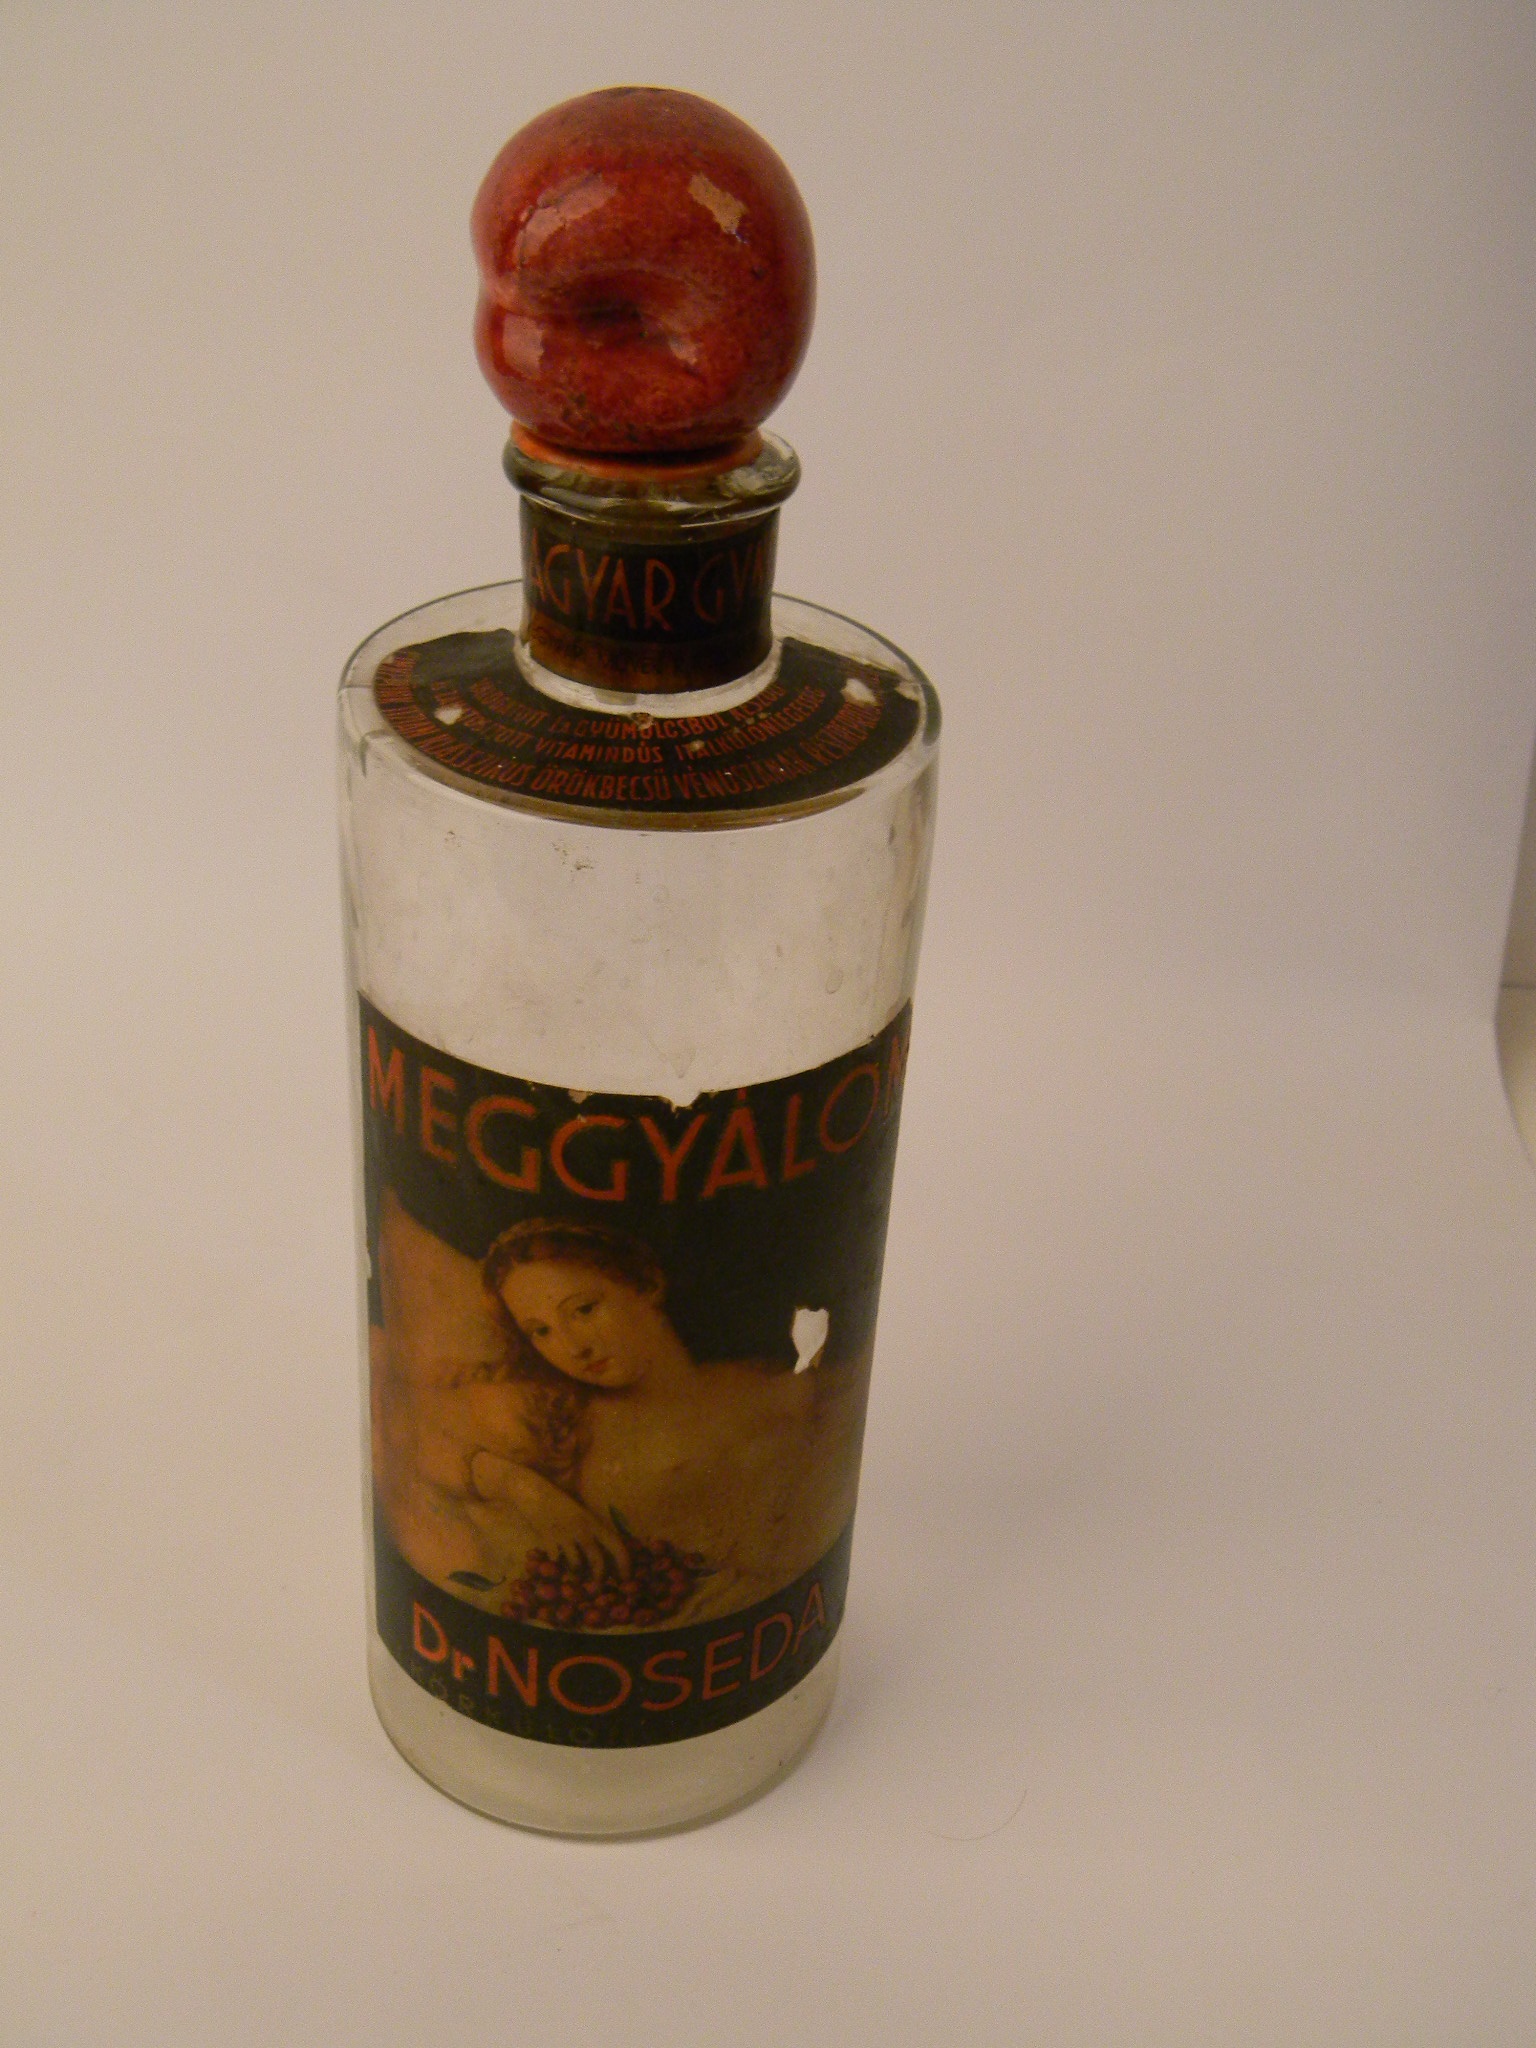 Dr. Noseda Meggyálom likőrös üvege (Magyar Kereskedelmi és Vendéglátóipari Múzeum CC BY-NC-SA)